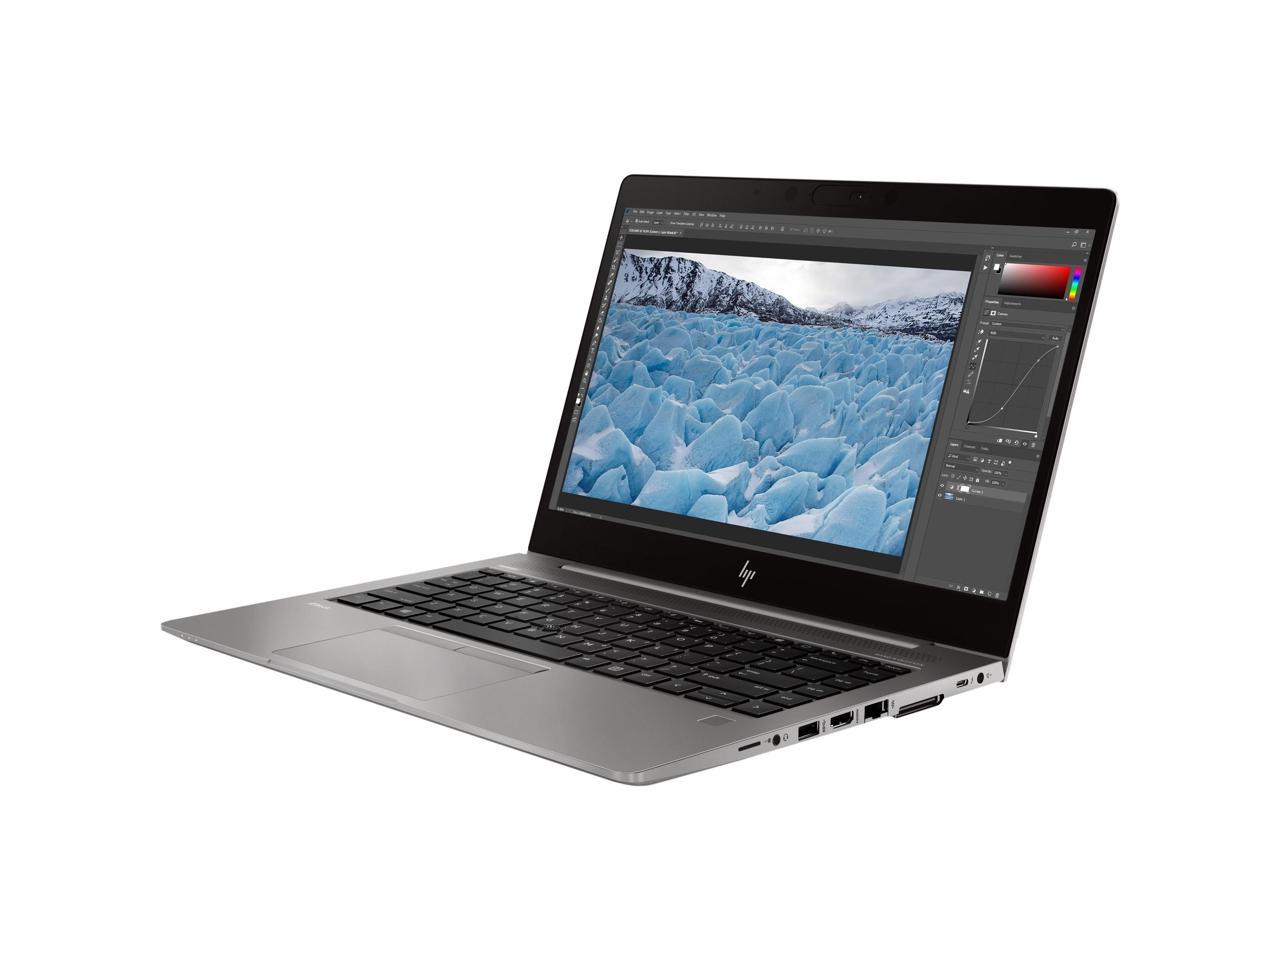 HP 7KP96UT ZBook 14u G6 14" Mobile Laptop i7-8565U 16GB 512GB SSD W10P